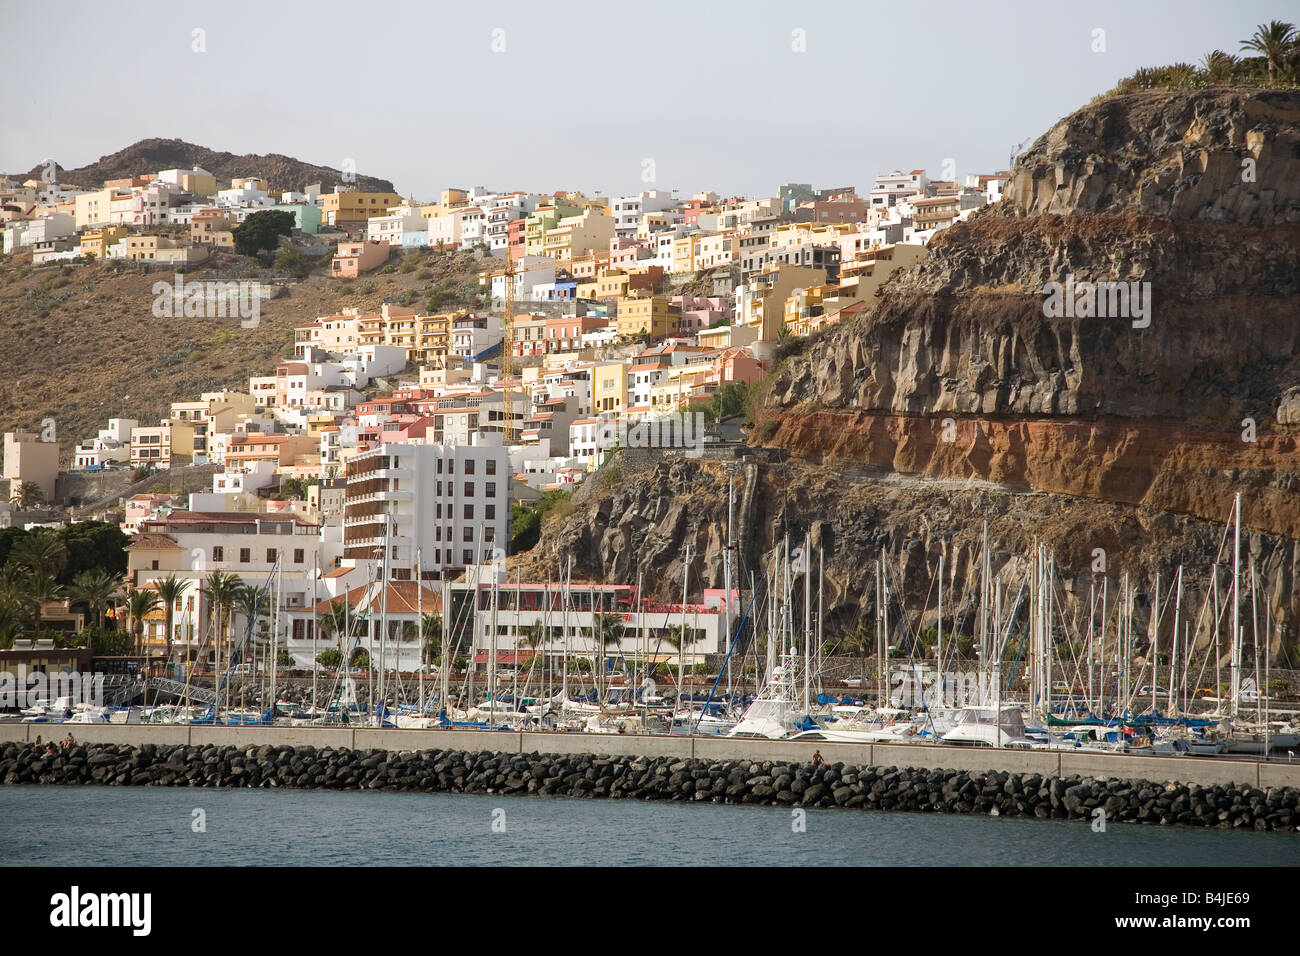 La ville espagnole et du port de San Sebastion sur l'île de La Gomara la deuxième plus petite des îles Canaries Banque D'Images